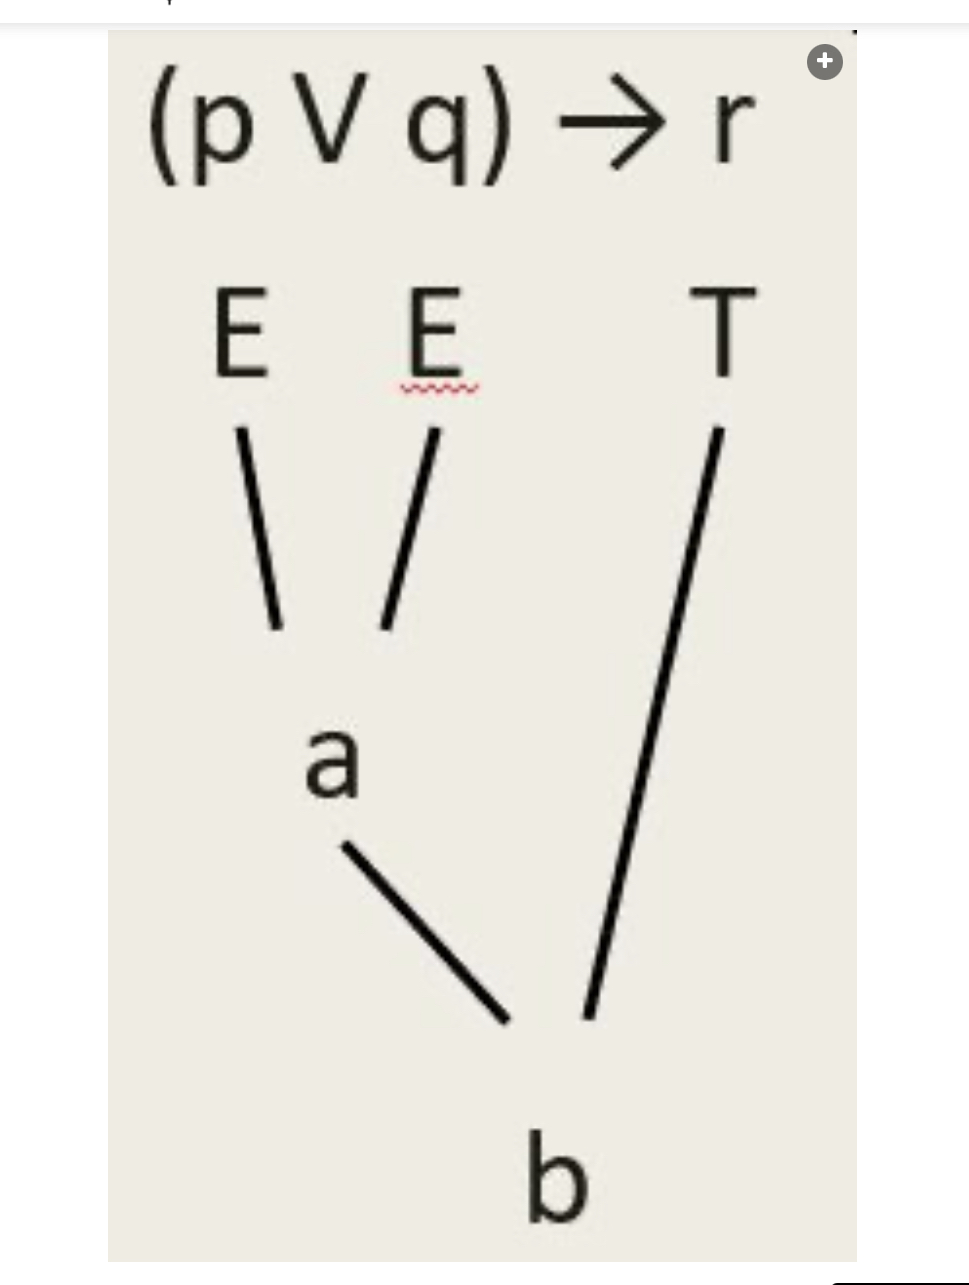 <p>Mitkä totuusarvot (T tai E) tulevat ylläolevaan diagrammiin a:n ja b:n tilalle?</p><p></p><p>A. a = T ja b = T.</p><p>B. a = E ja b = T.</p><p>C. a = E ja b = E.</p><p>D. a = T ja b = E.</p>